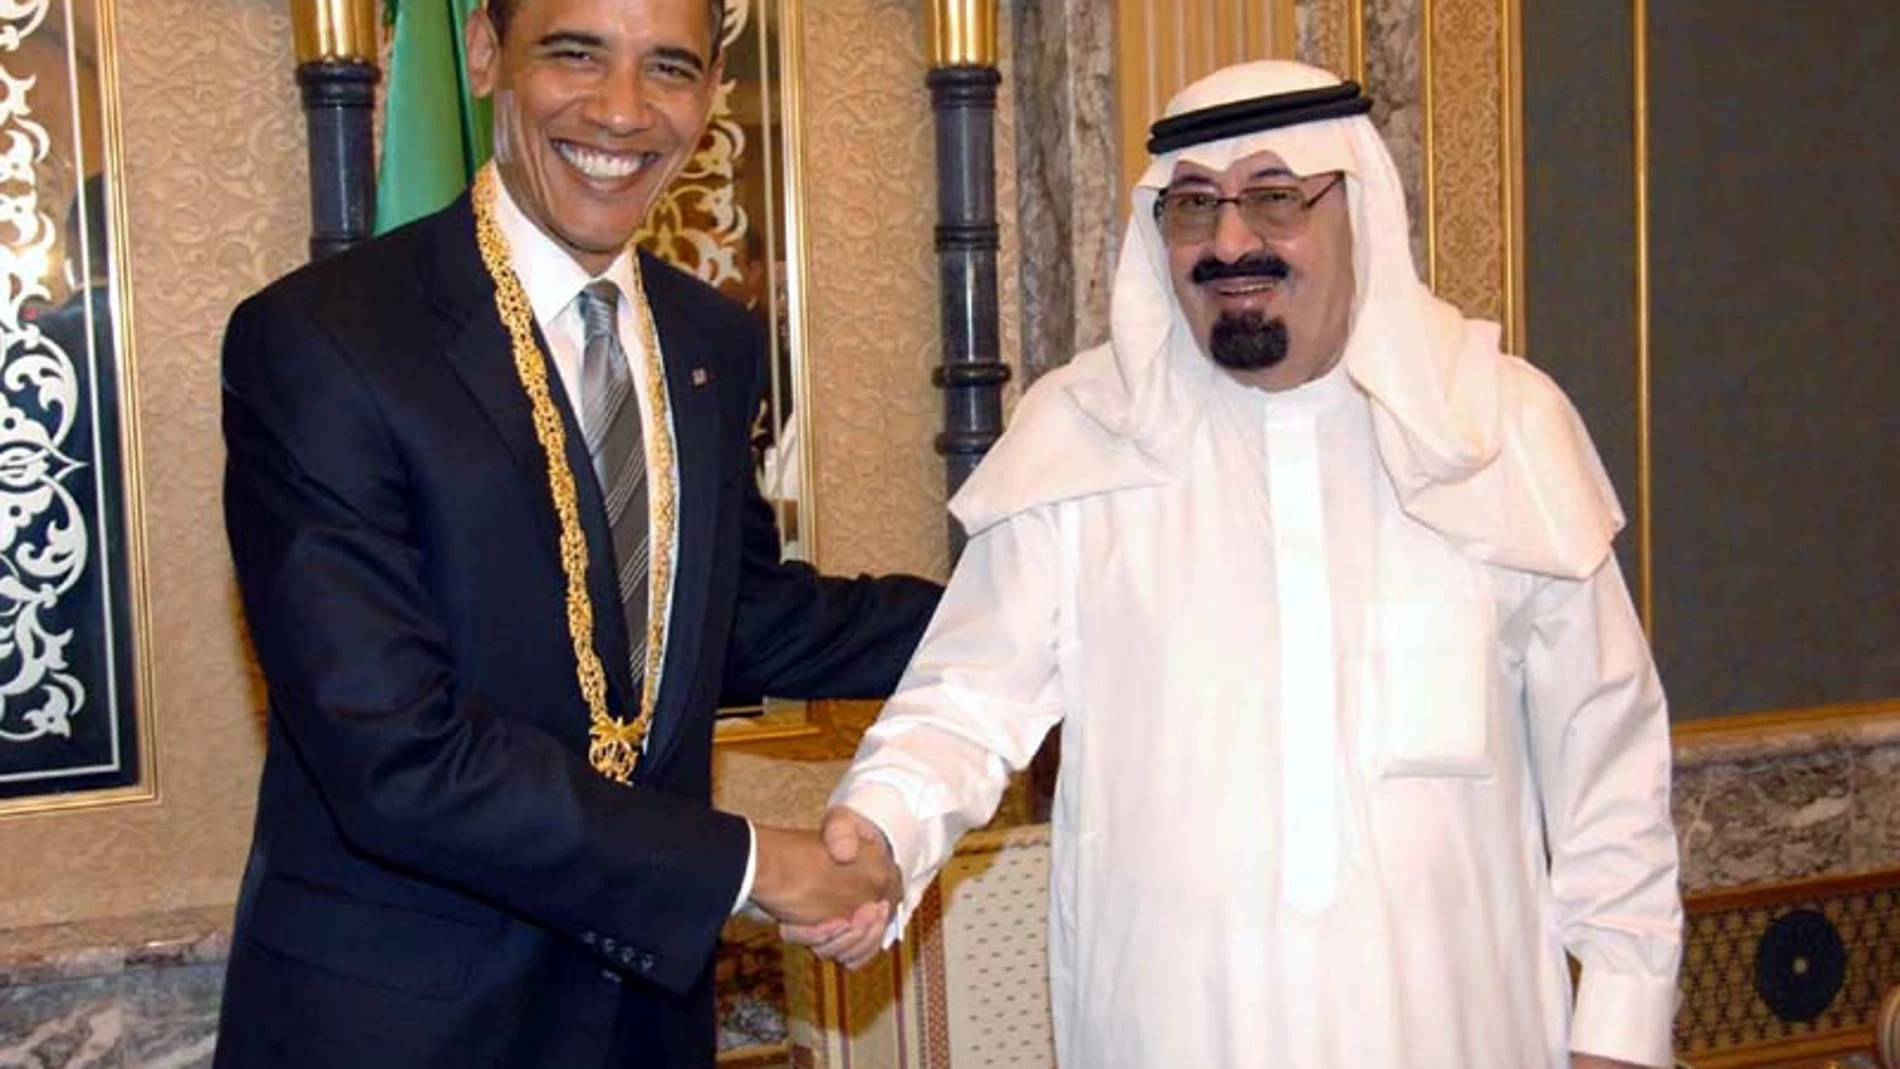 El presidente Barack Obama y el rey de Arabia Saudí, Abdalá bin Abdelaziz, en 2009